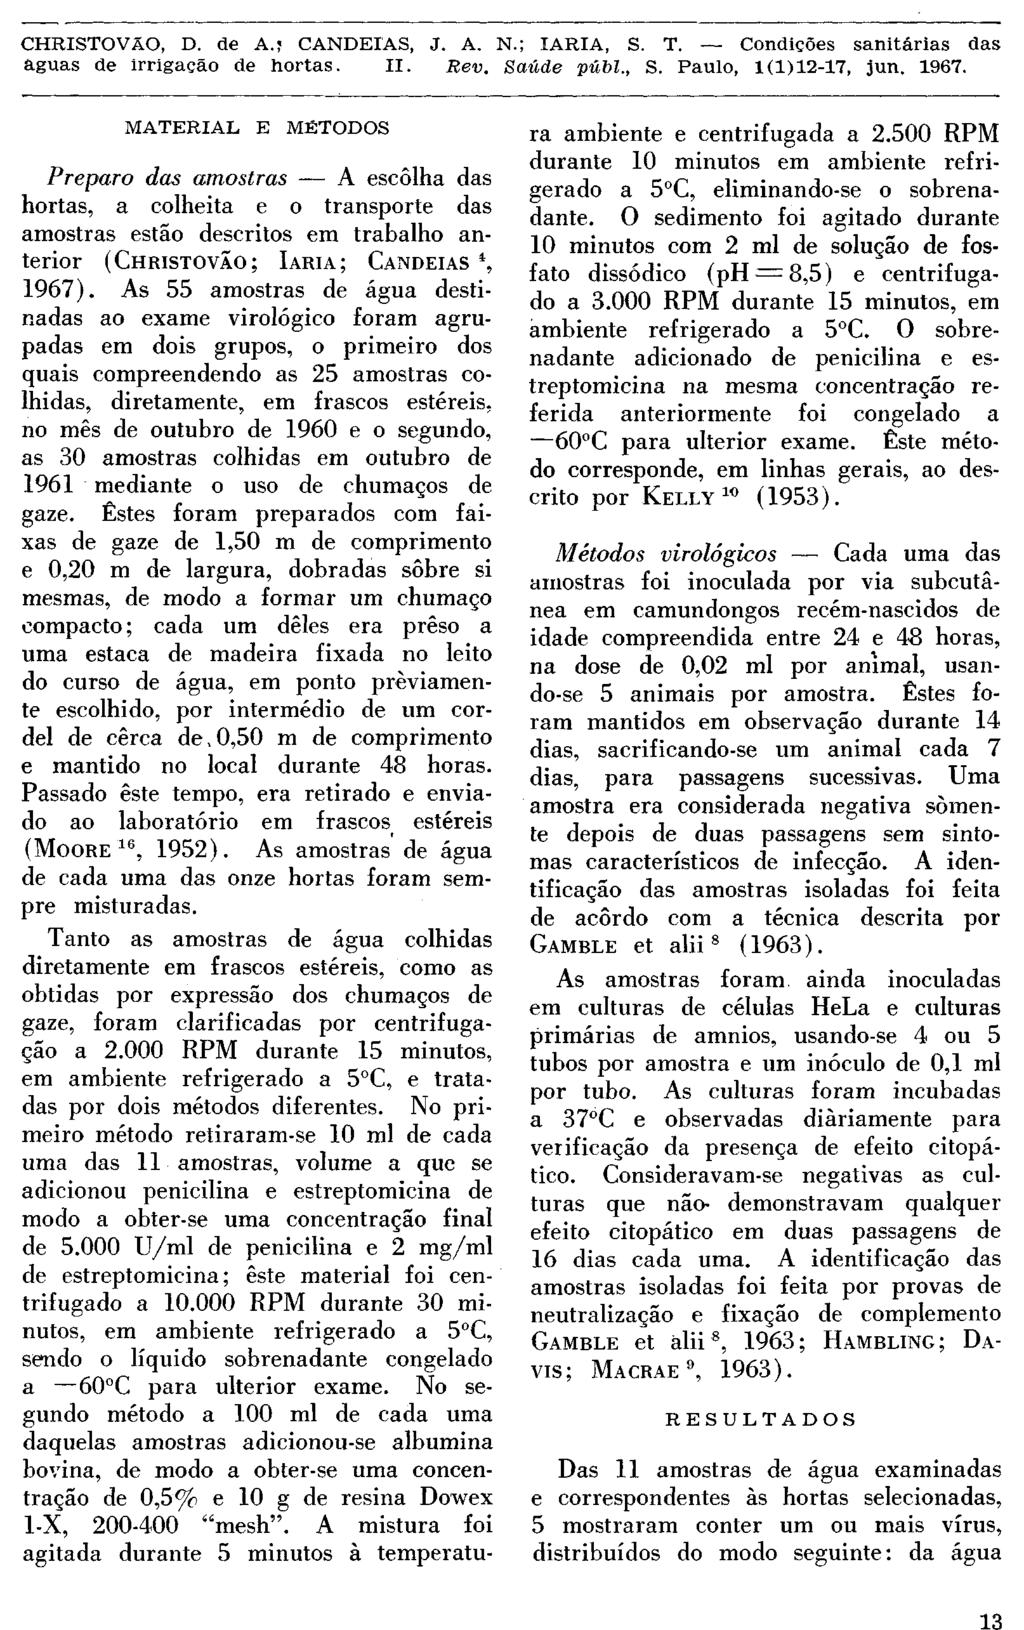 MATERIAL E MÉTODOS Preparo das amostras A escôlha das hortas, a colheita e o transporte das amostras estão descritos em trabalho anterior (CHRISTOVÃO; IARIA; CANDEIAS 4, 1967).